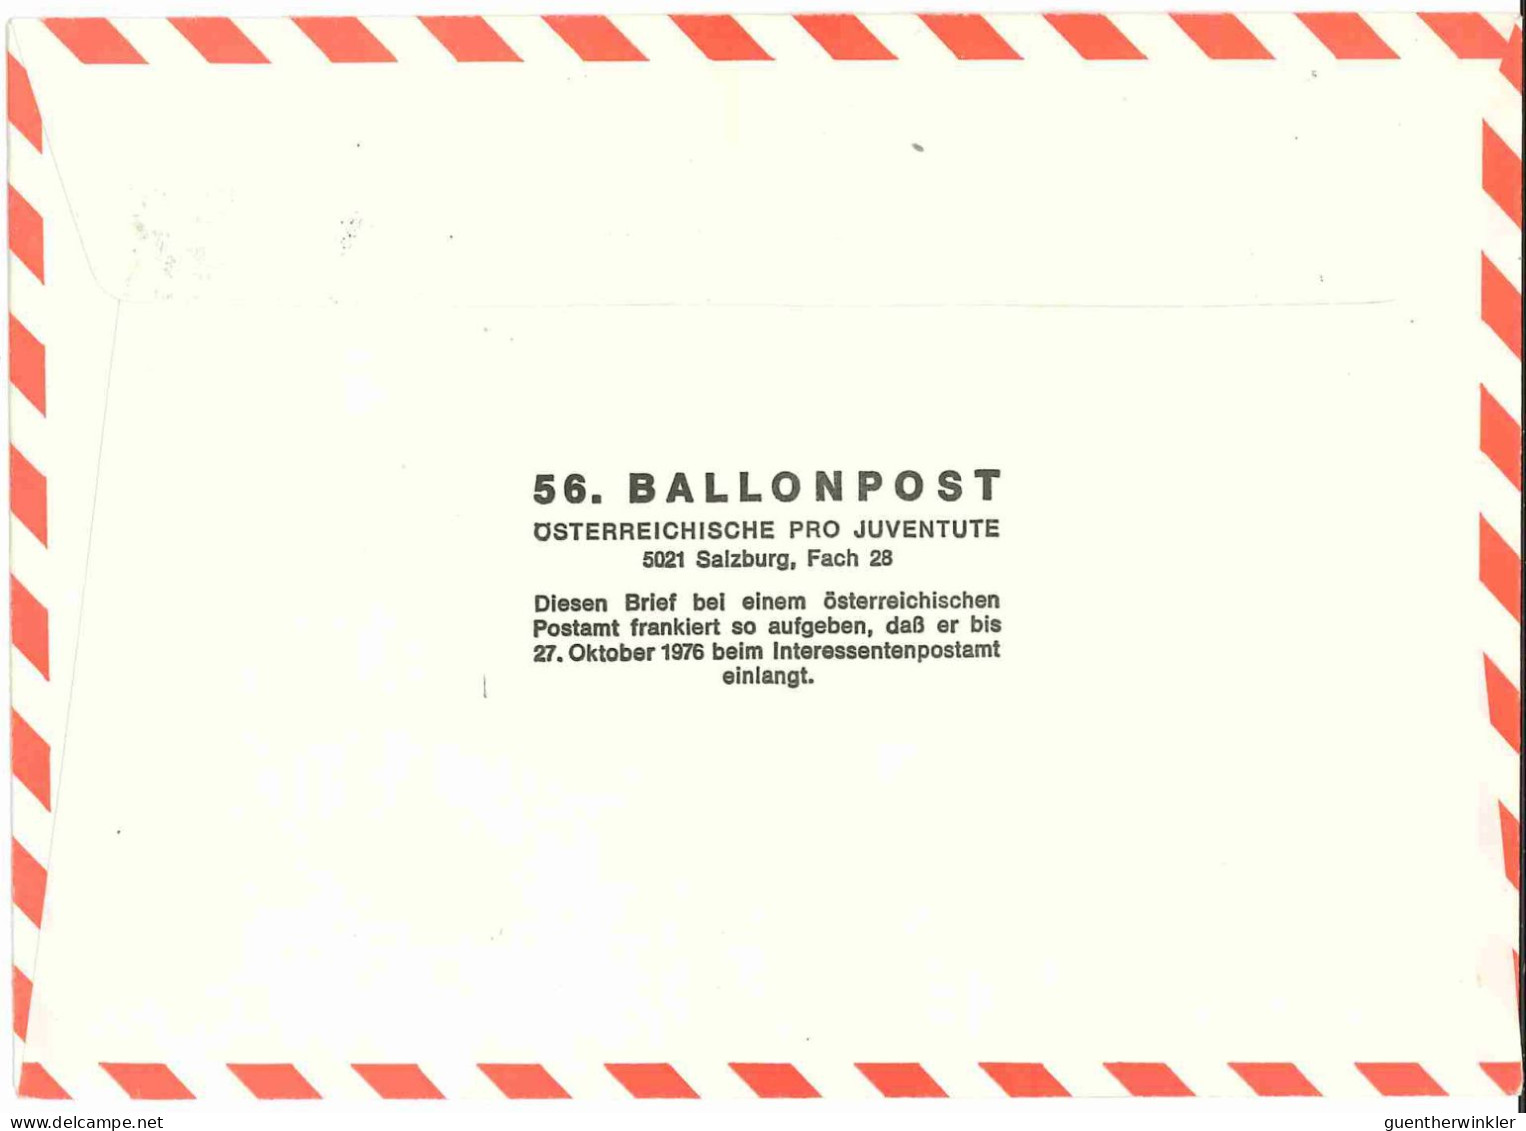 Regulärer Ballonpostflug Nr. 56a Der Pro Juventute [RBP56.] - Per Palloni